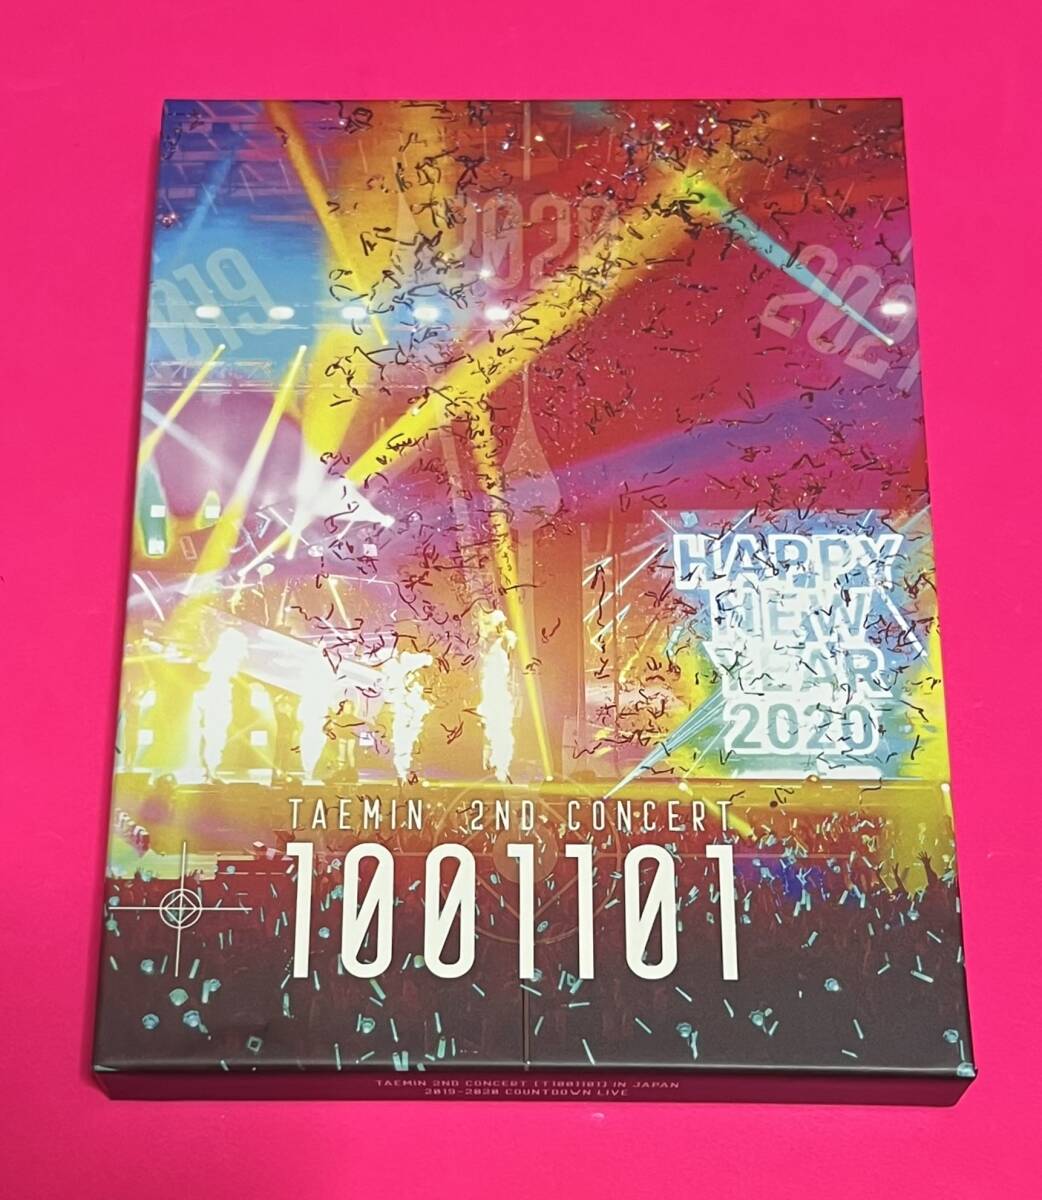 【超美品】 SHINee TAEMIN Blu-ray 2ND CONCERT 1001101 in JAPAN 2019-2020 COUNTDOWN LIVE テミン D5の画像1